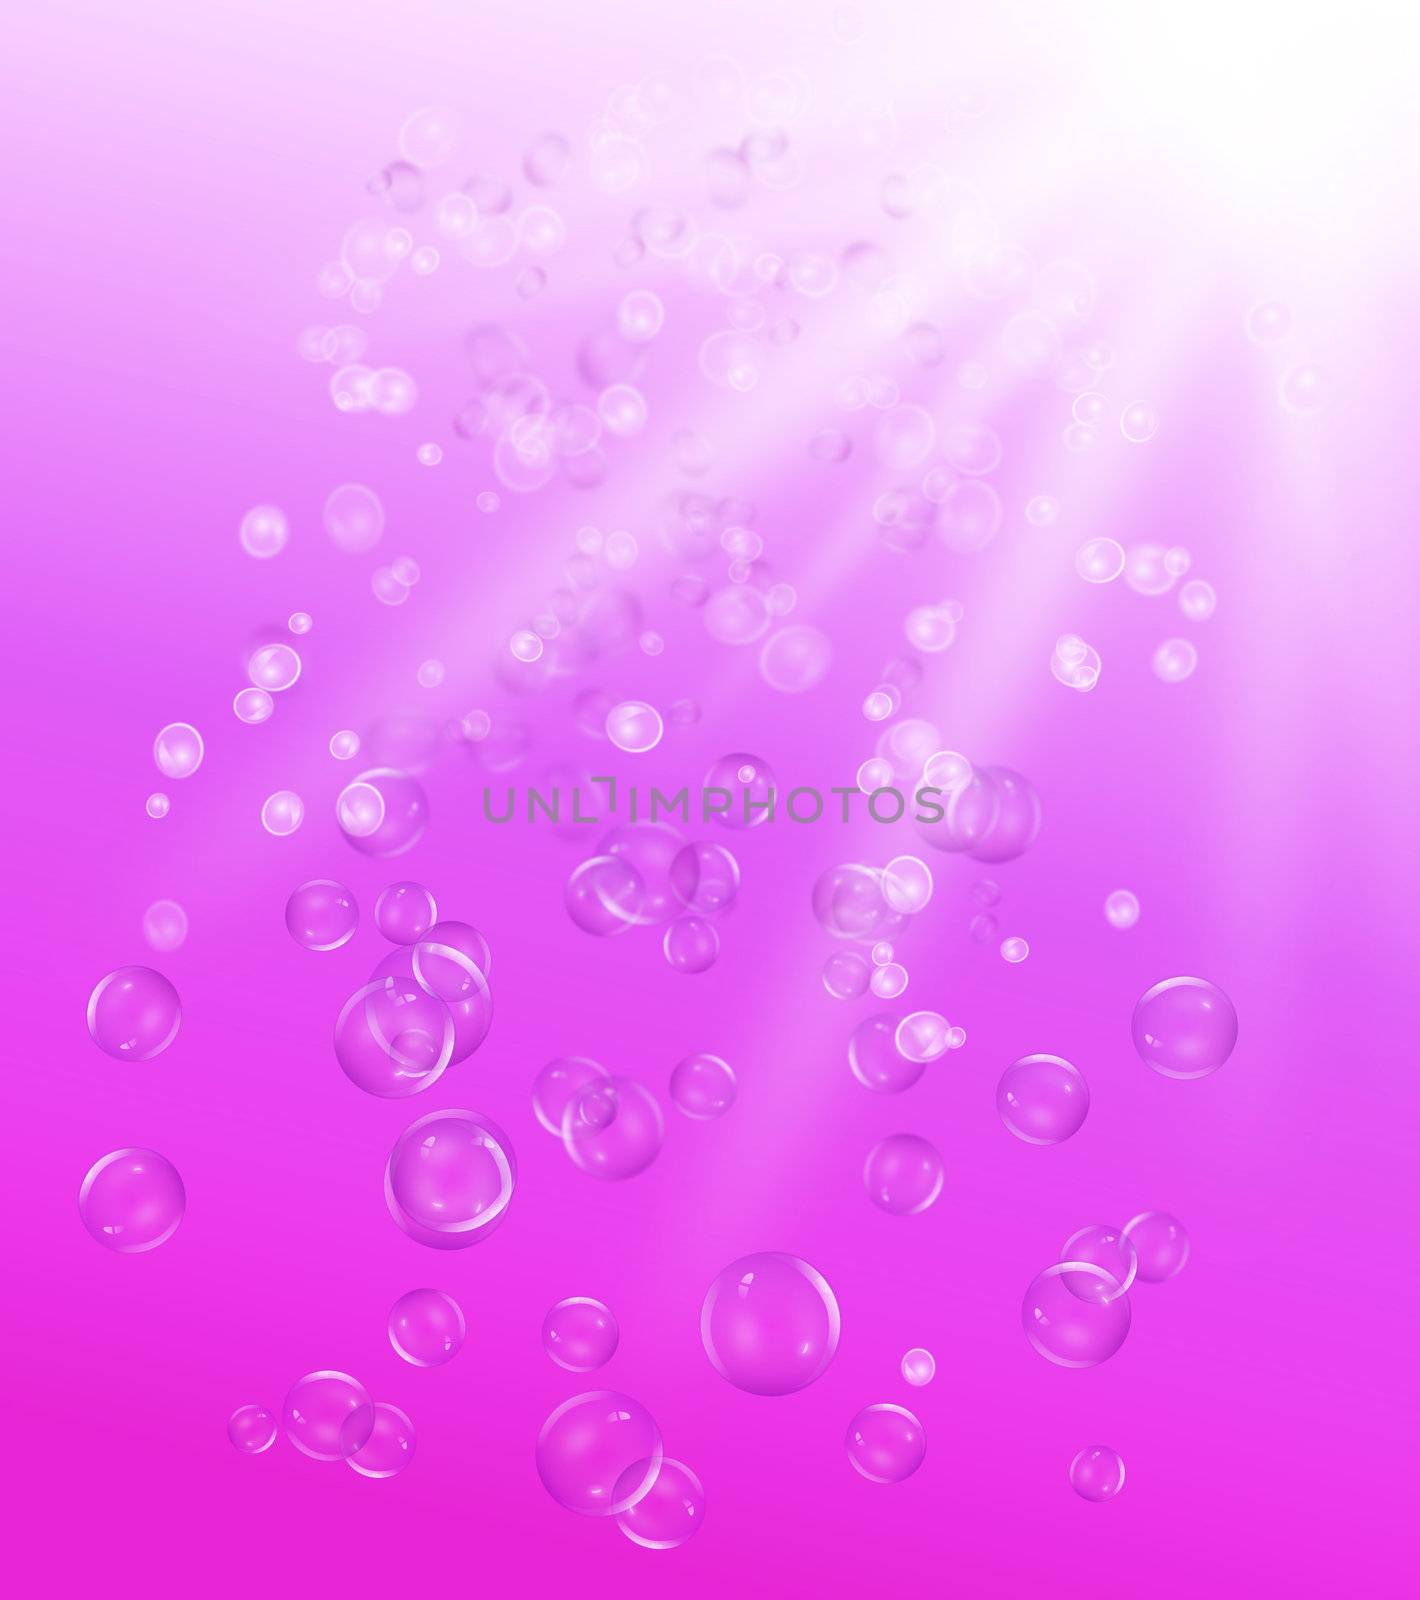 Underwater bubbles. by 72soul